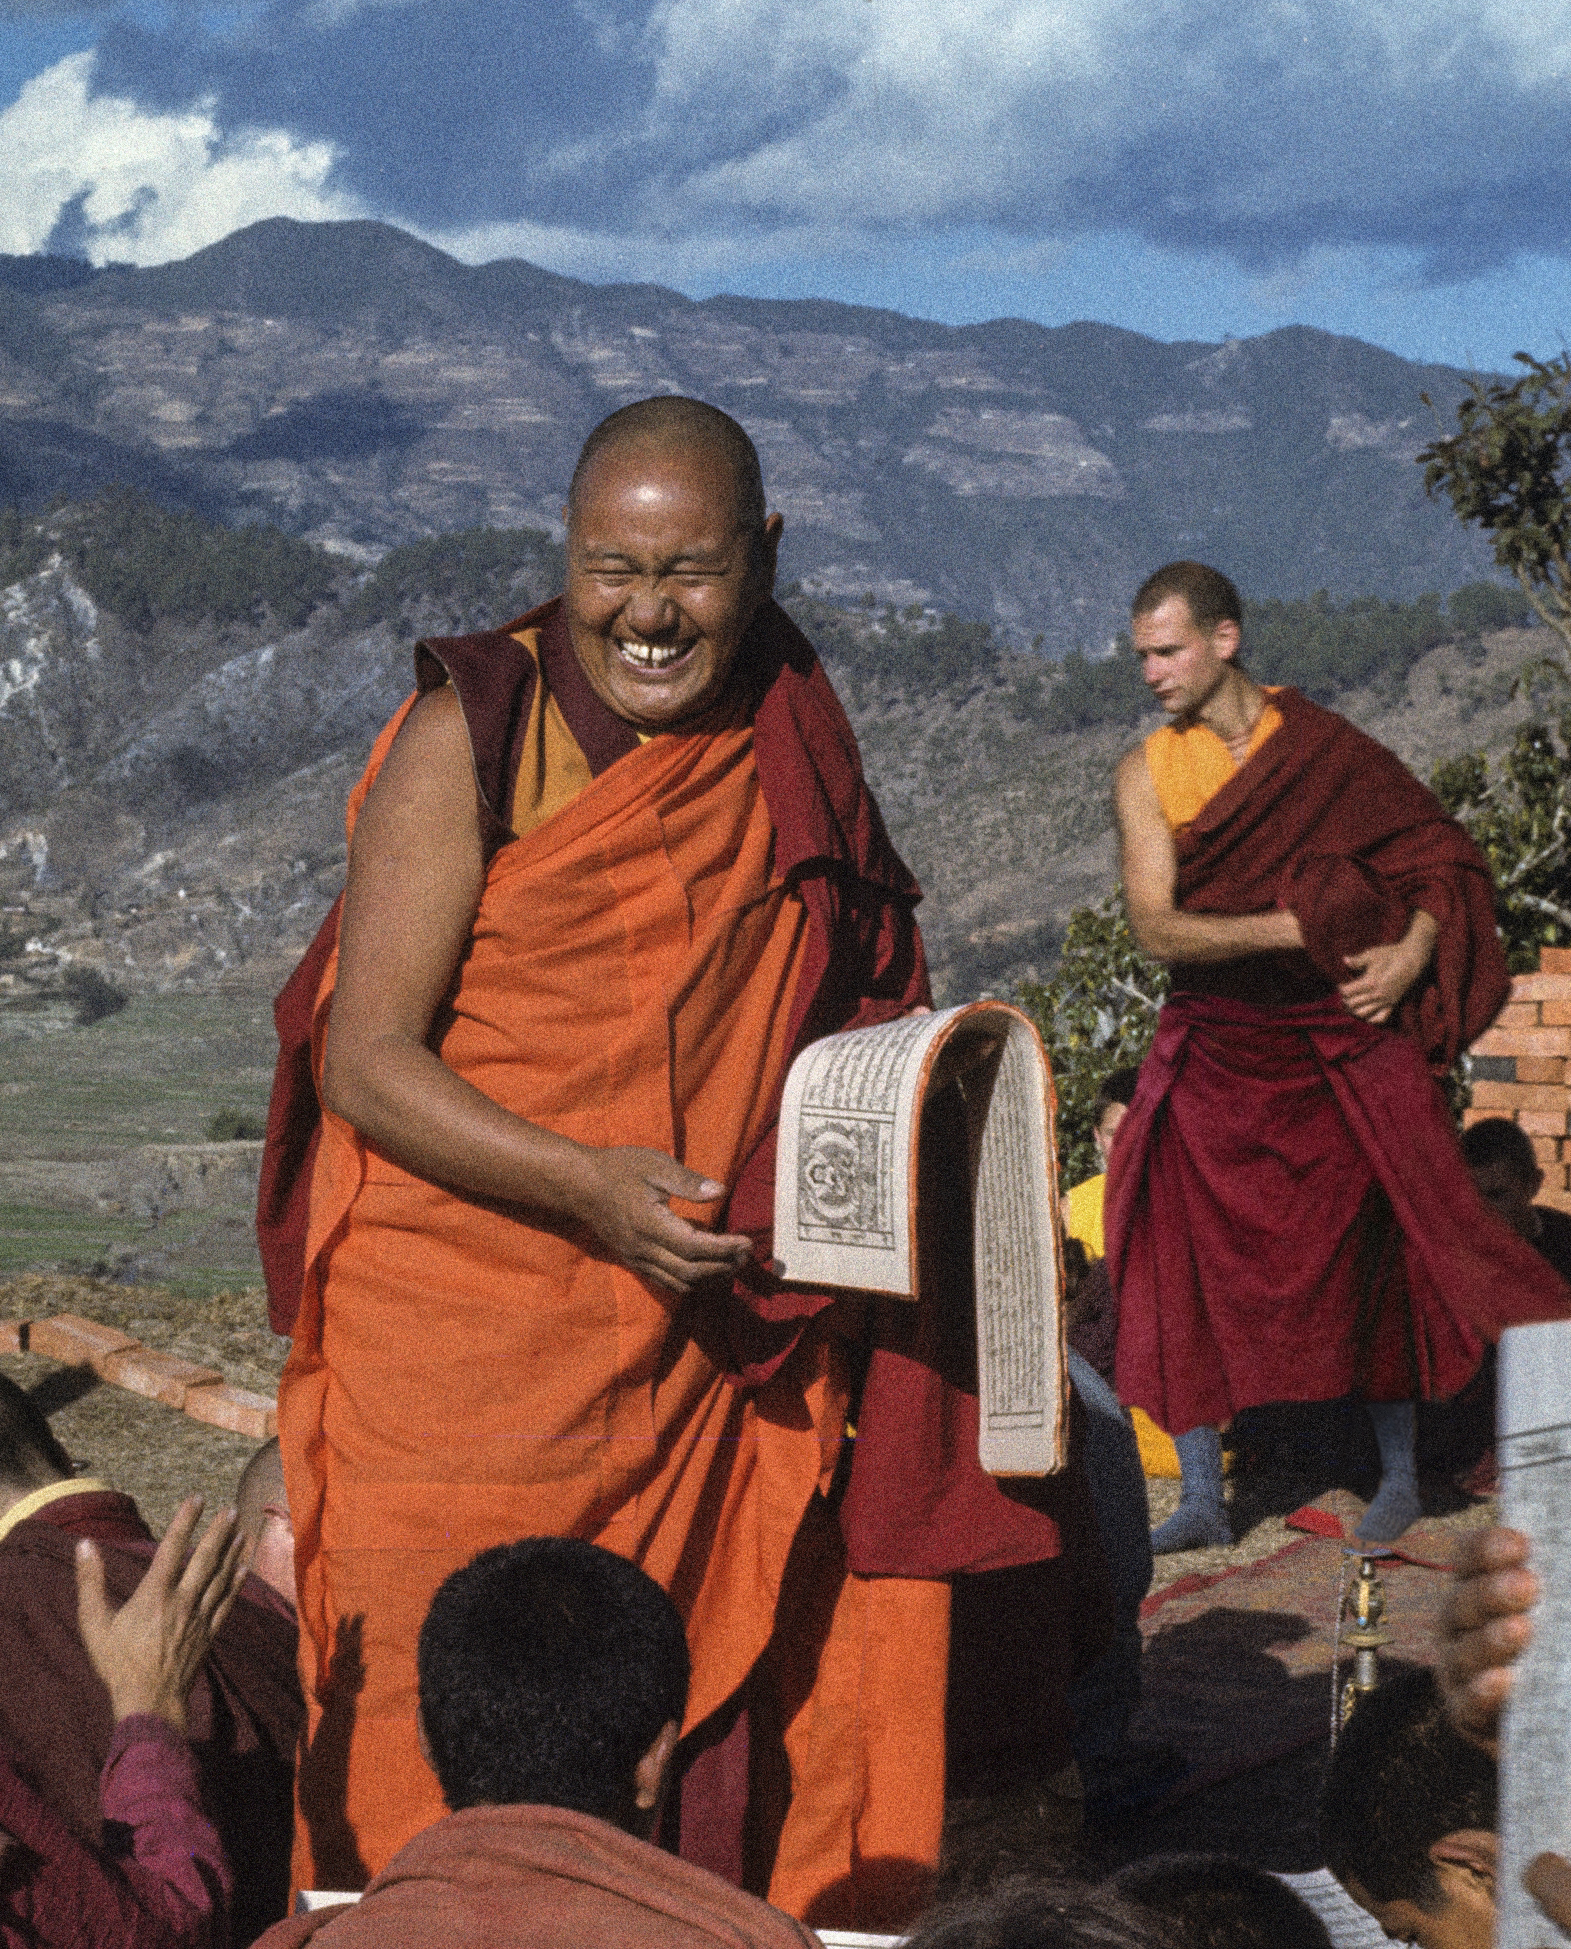 (39377_sl-3.psd) Lama Yeshe and Thubten Pelgye (John Douthitt), Kopan Monastery, 1978.